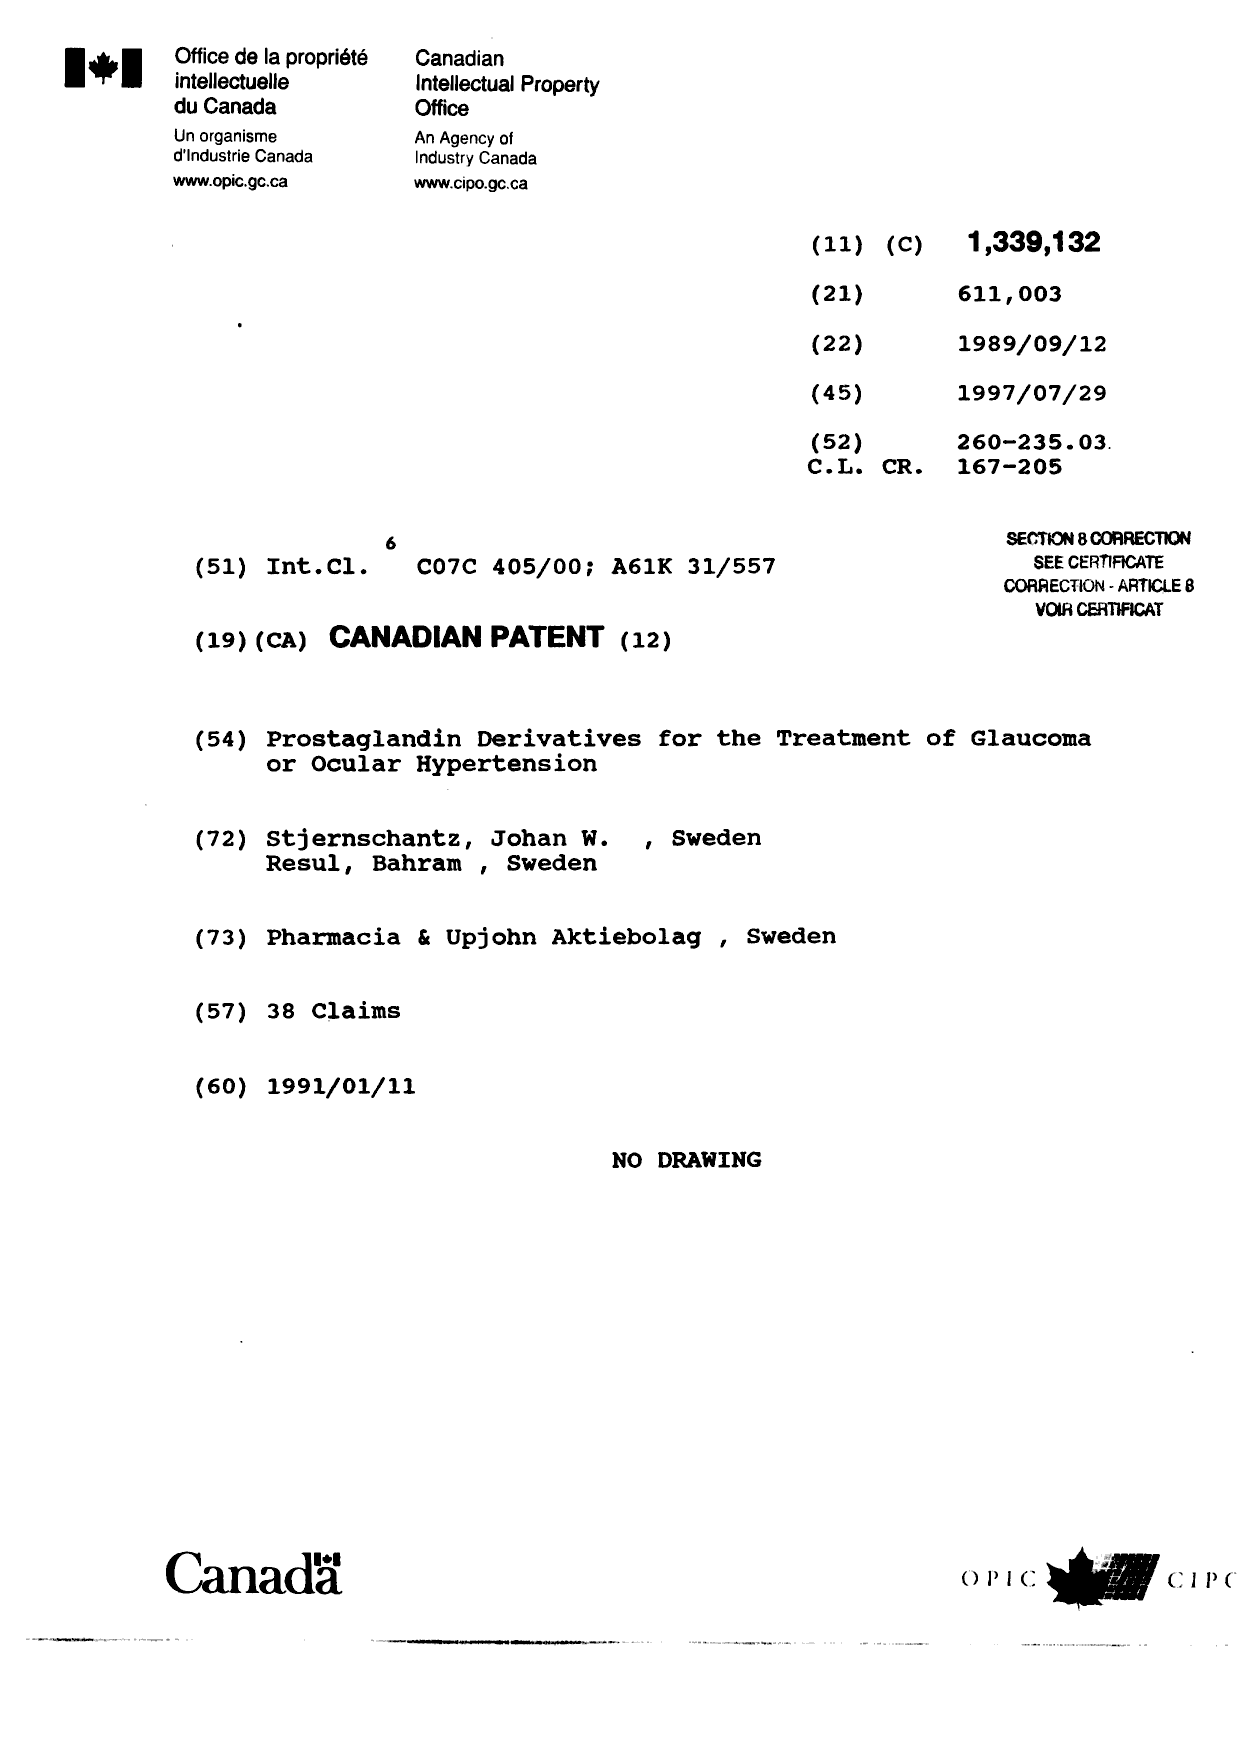 Document de brevet canadien 1339132. Page couverture 20020702. Image 1 de 2